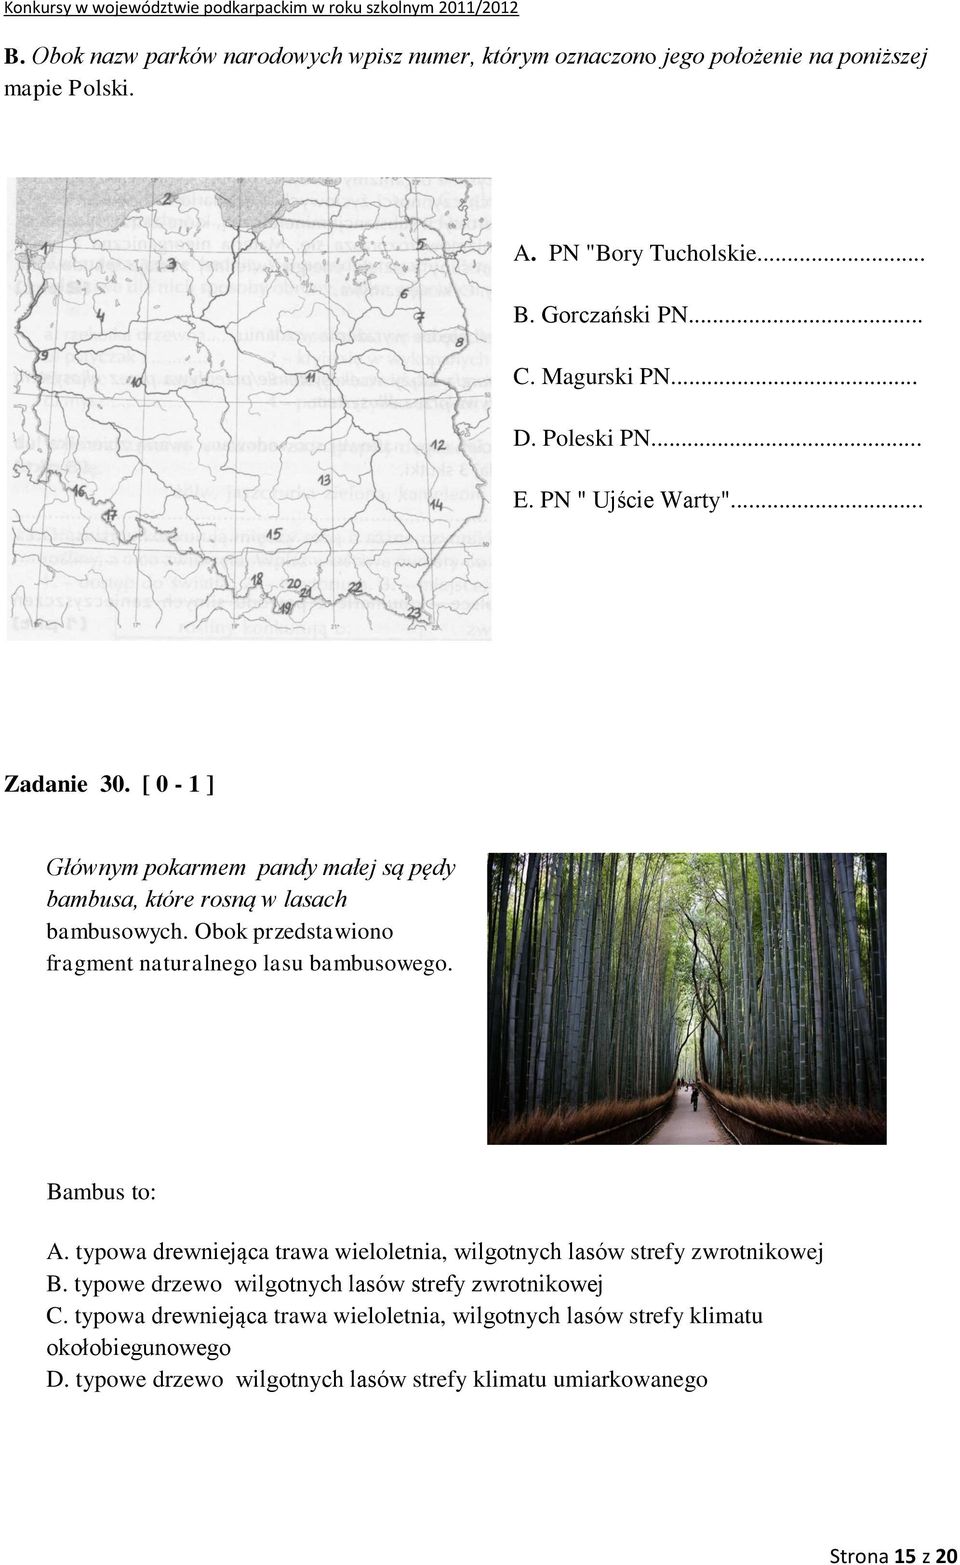 Obok przedstawiono fragment naturalnego lasu bambusowego. Bambus to: A. typowa drewniejąca trawa wieloletnia, wilgotnych lasów strefy zwrotnikowej B.